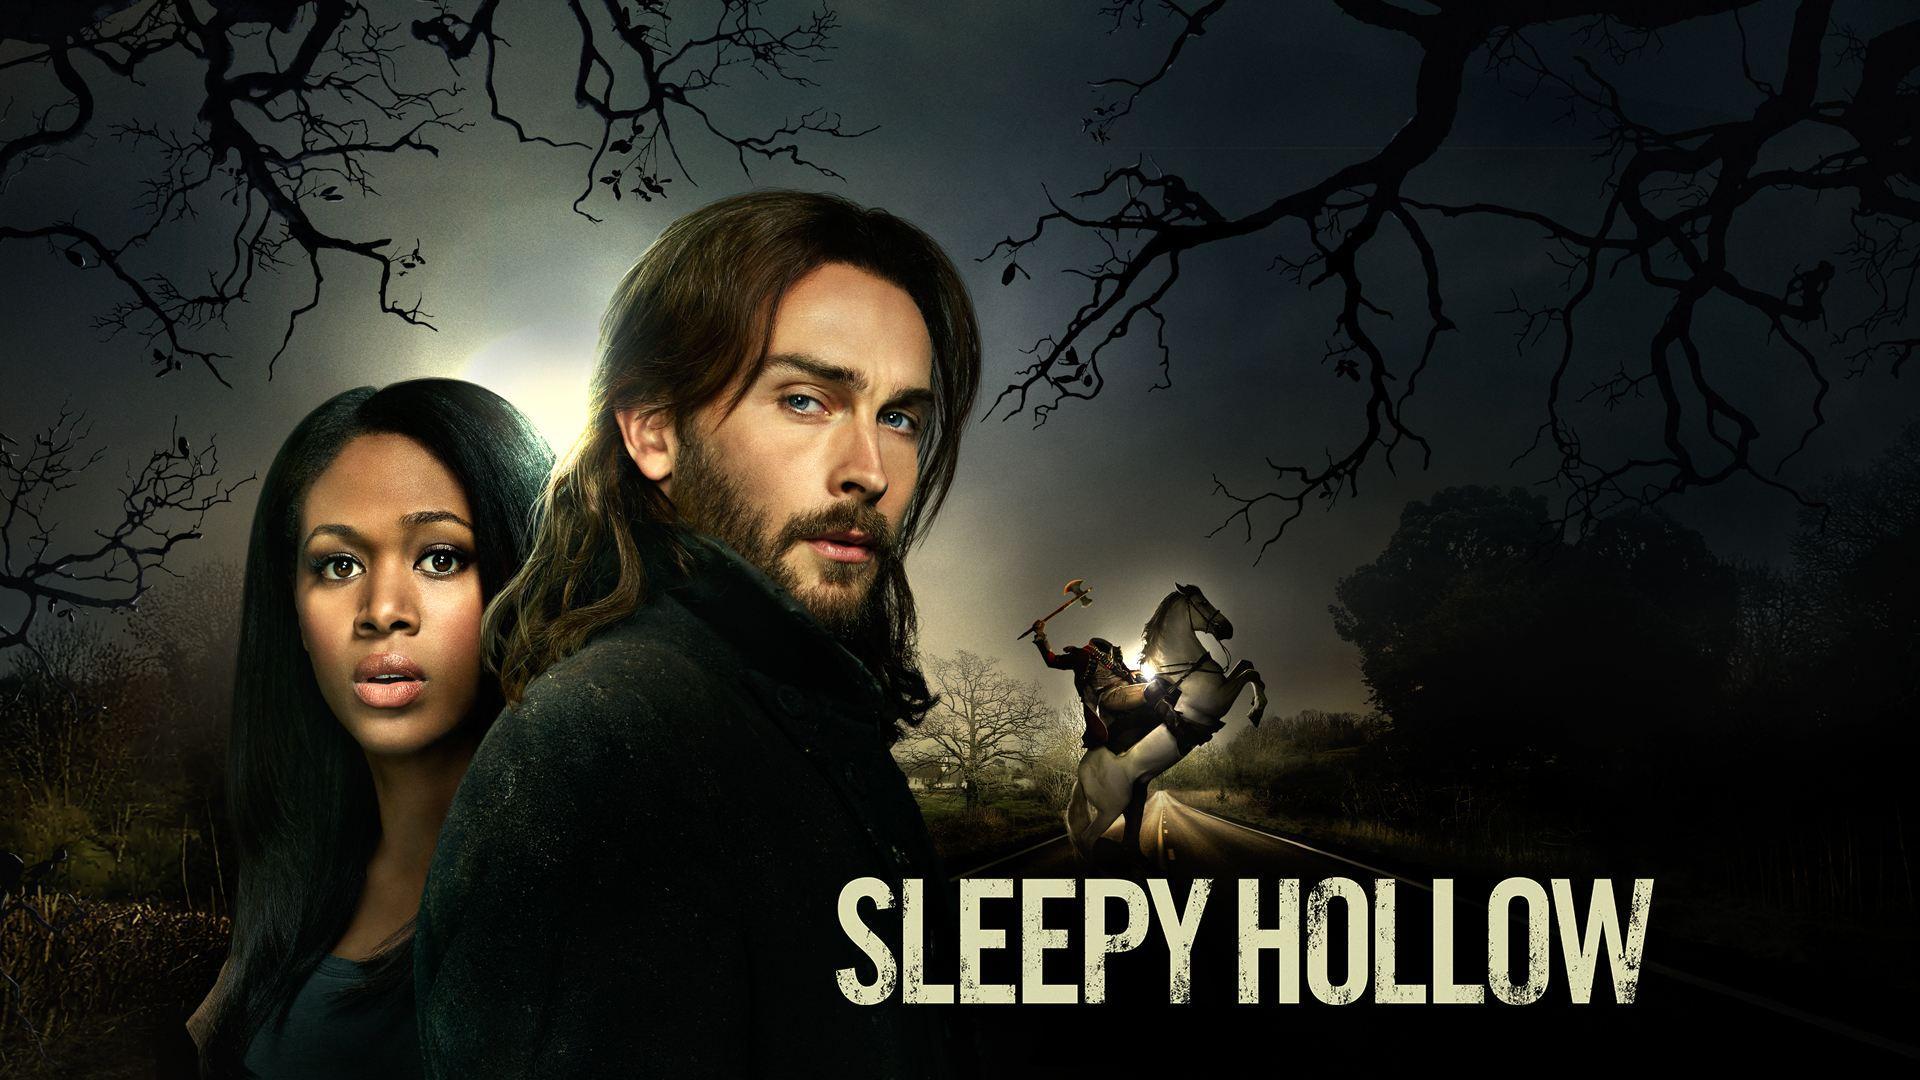 Sleepy Hollow 2014 TV Series Wallpaper Wide or HD. TV Series